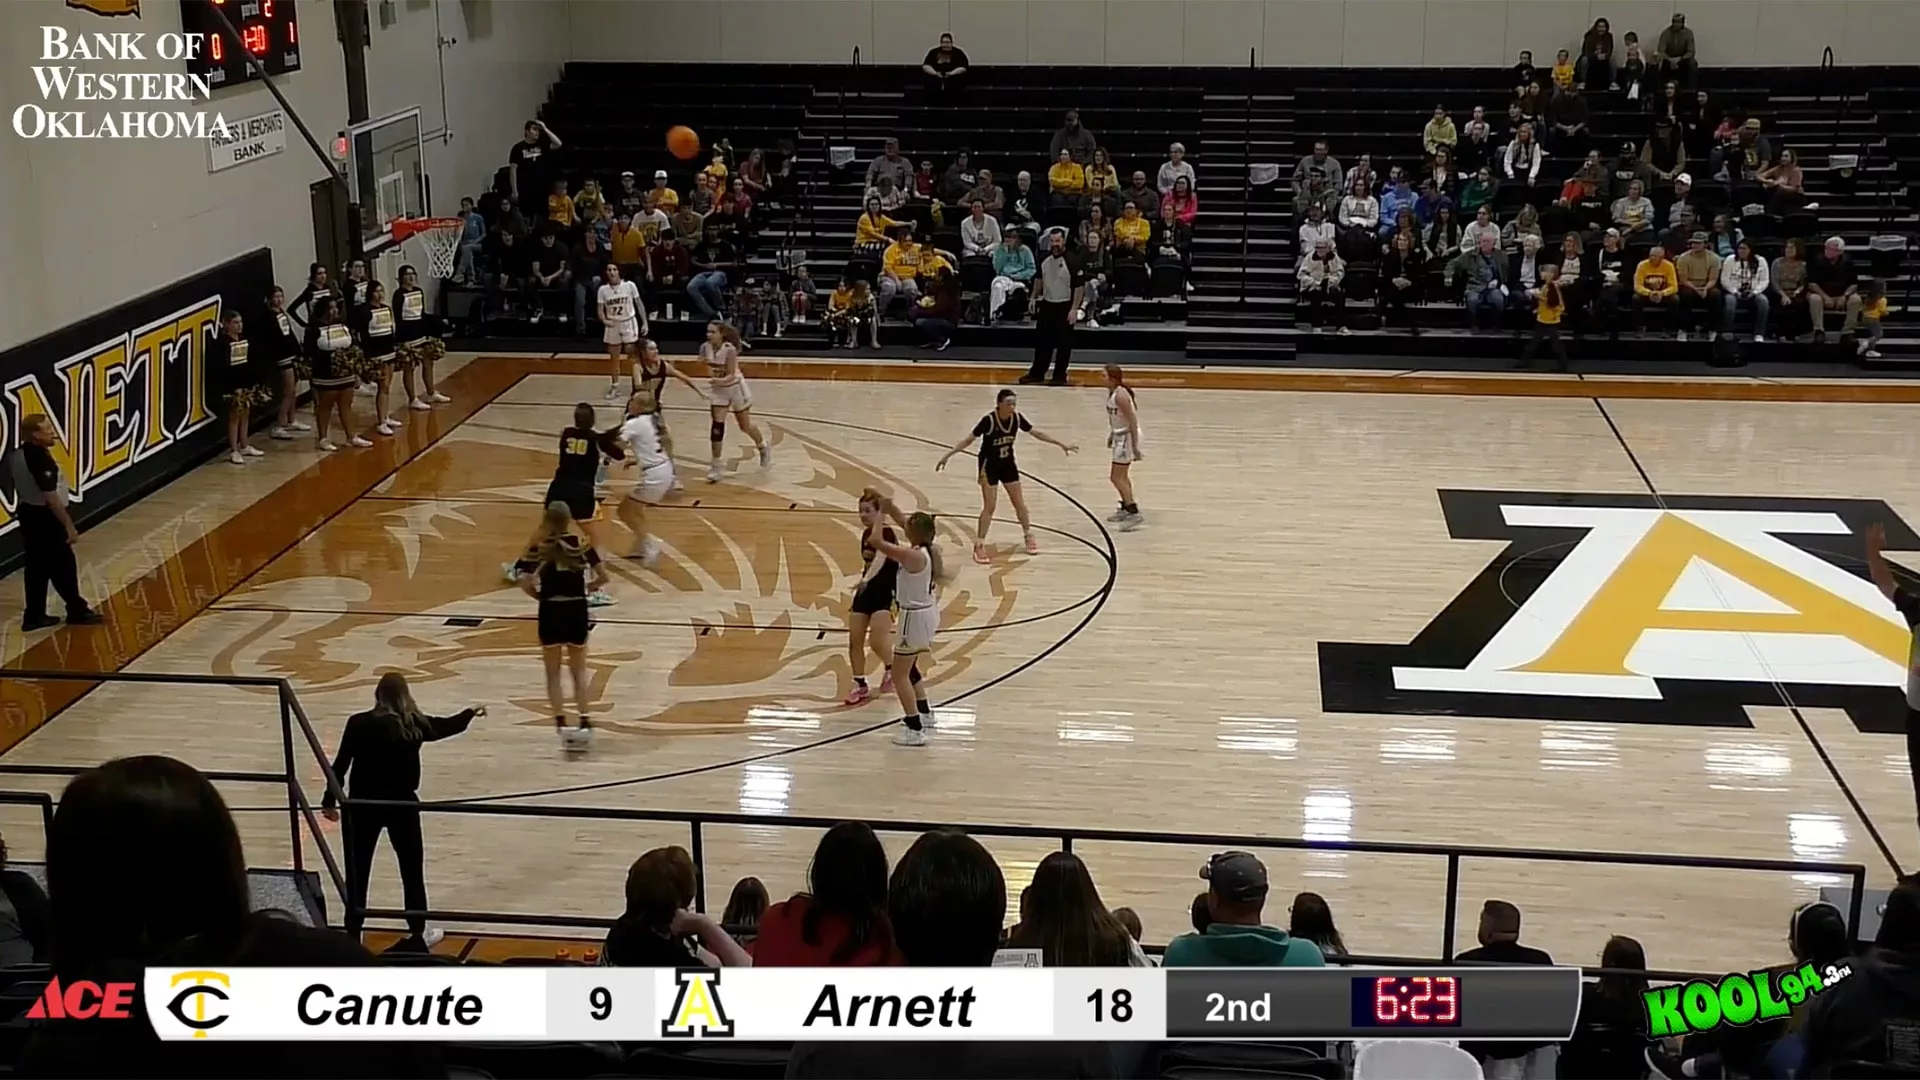 Girls' Basketball Game - Canute vs. Arnett - ParagonTV.com